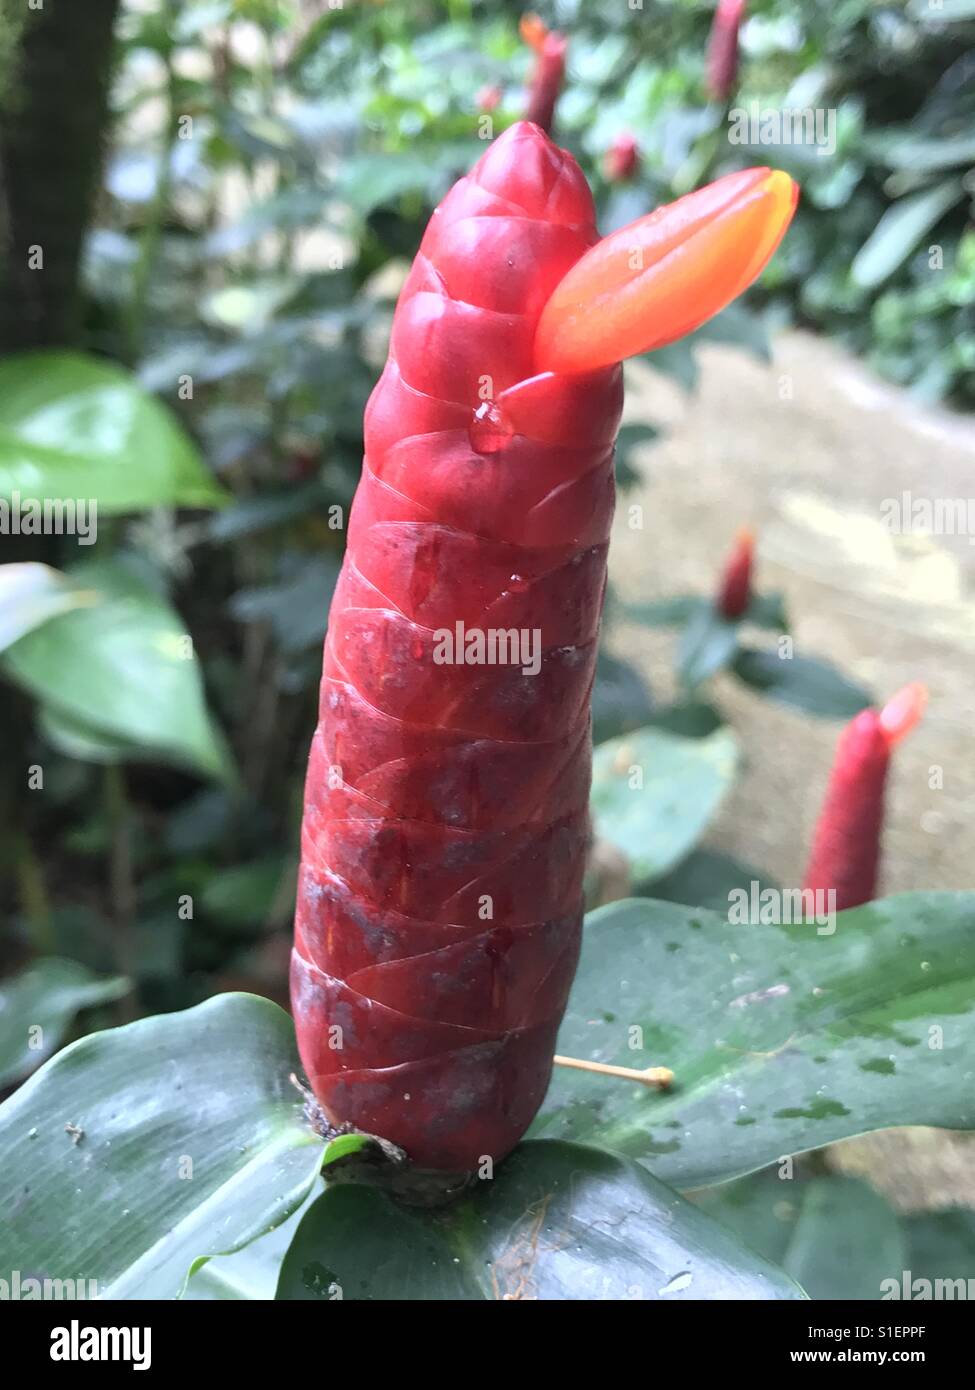 Fleur de gingembre à tête indienne, fleur rouge -Cotus spicatus, aussi connu sous le nom de gingembre spiralflag, tisane à base de feuilles, fleurs rouges-orange, cône rouge court, Singapour, drapeau scarlet en spirale Banque D'Images